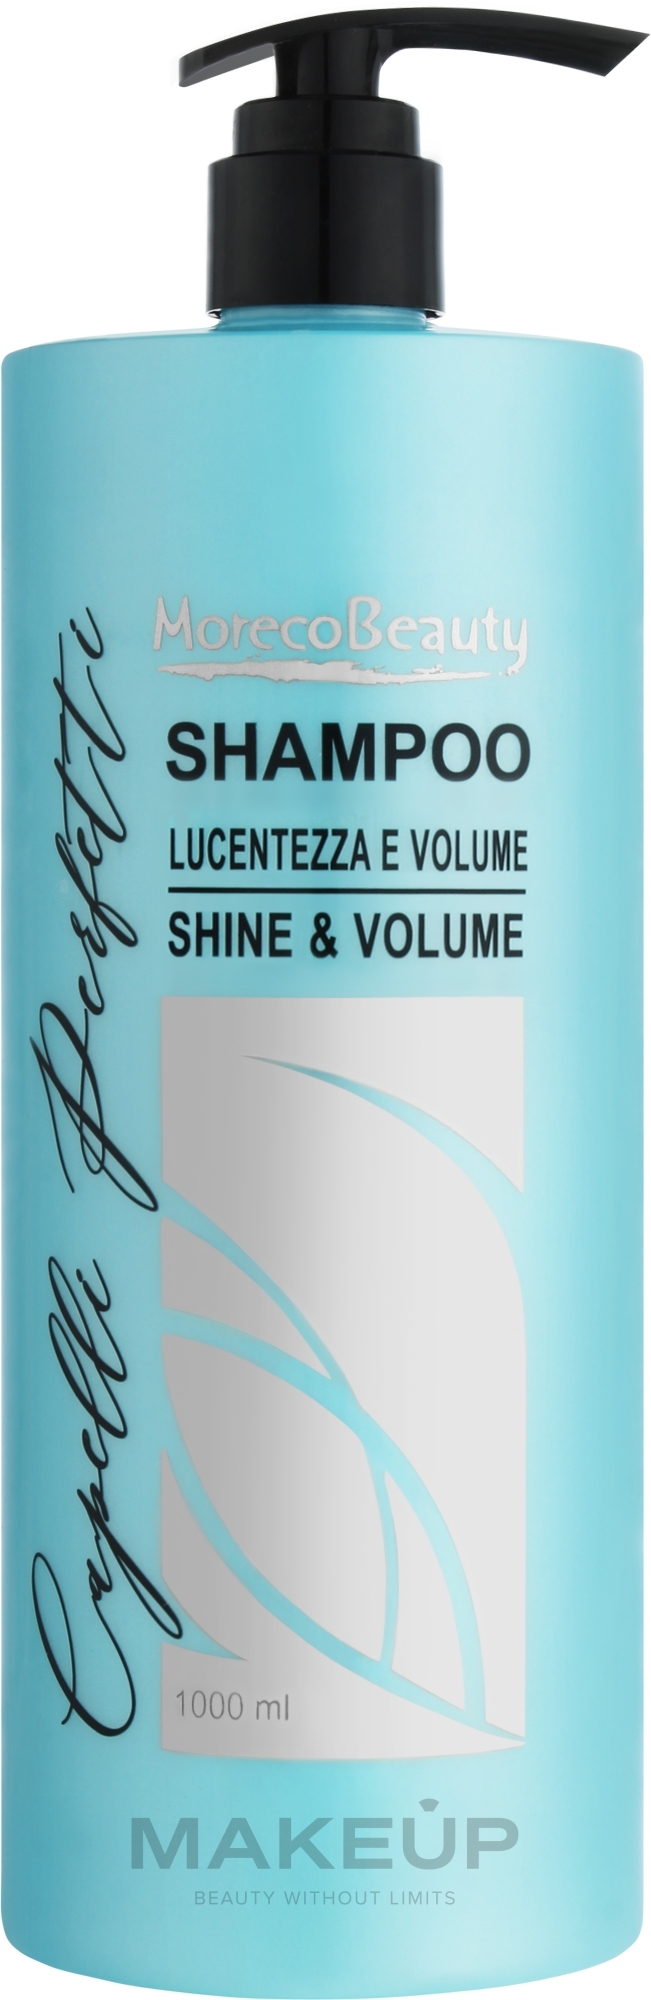 Шампунь для волос "Блеск и объем" - Moreco Beauty Shine & Volume — фото 1000ml